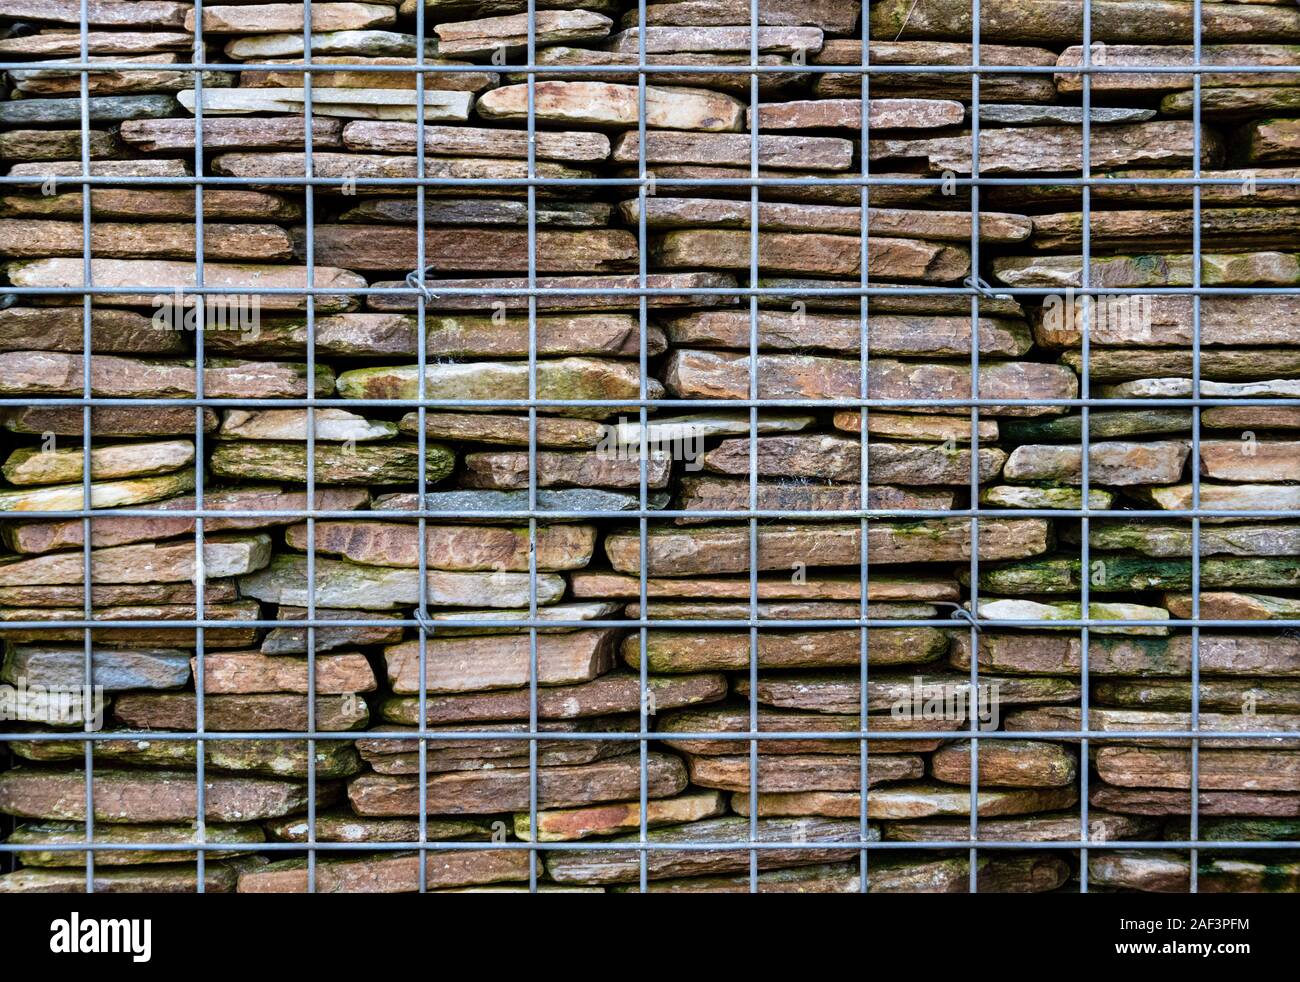 Nahaufnahme von gabionen Stützmauer, gebaut von einem Draht Käfig und Stein innen gestapelt. Stockfoto